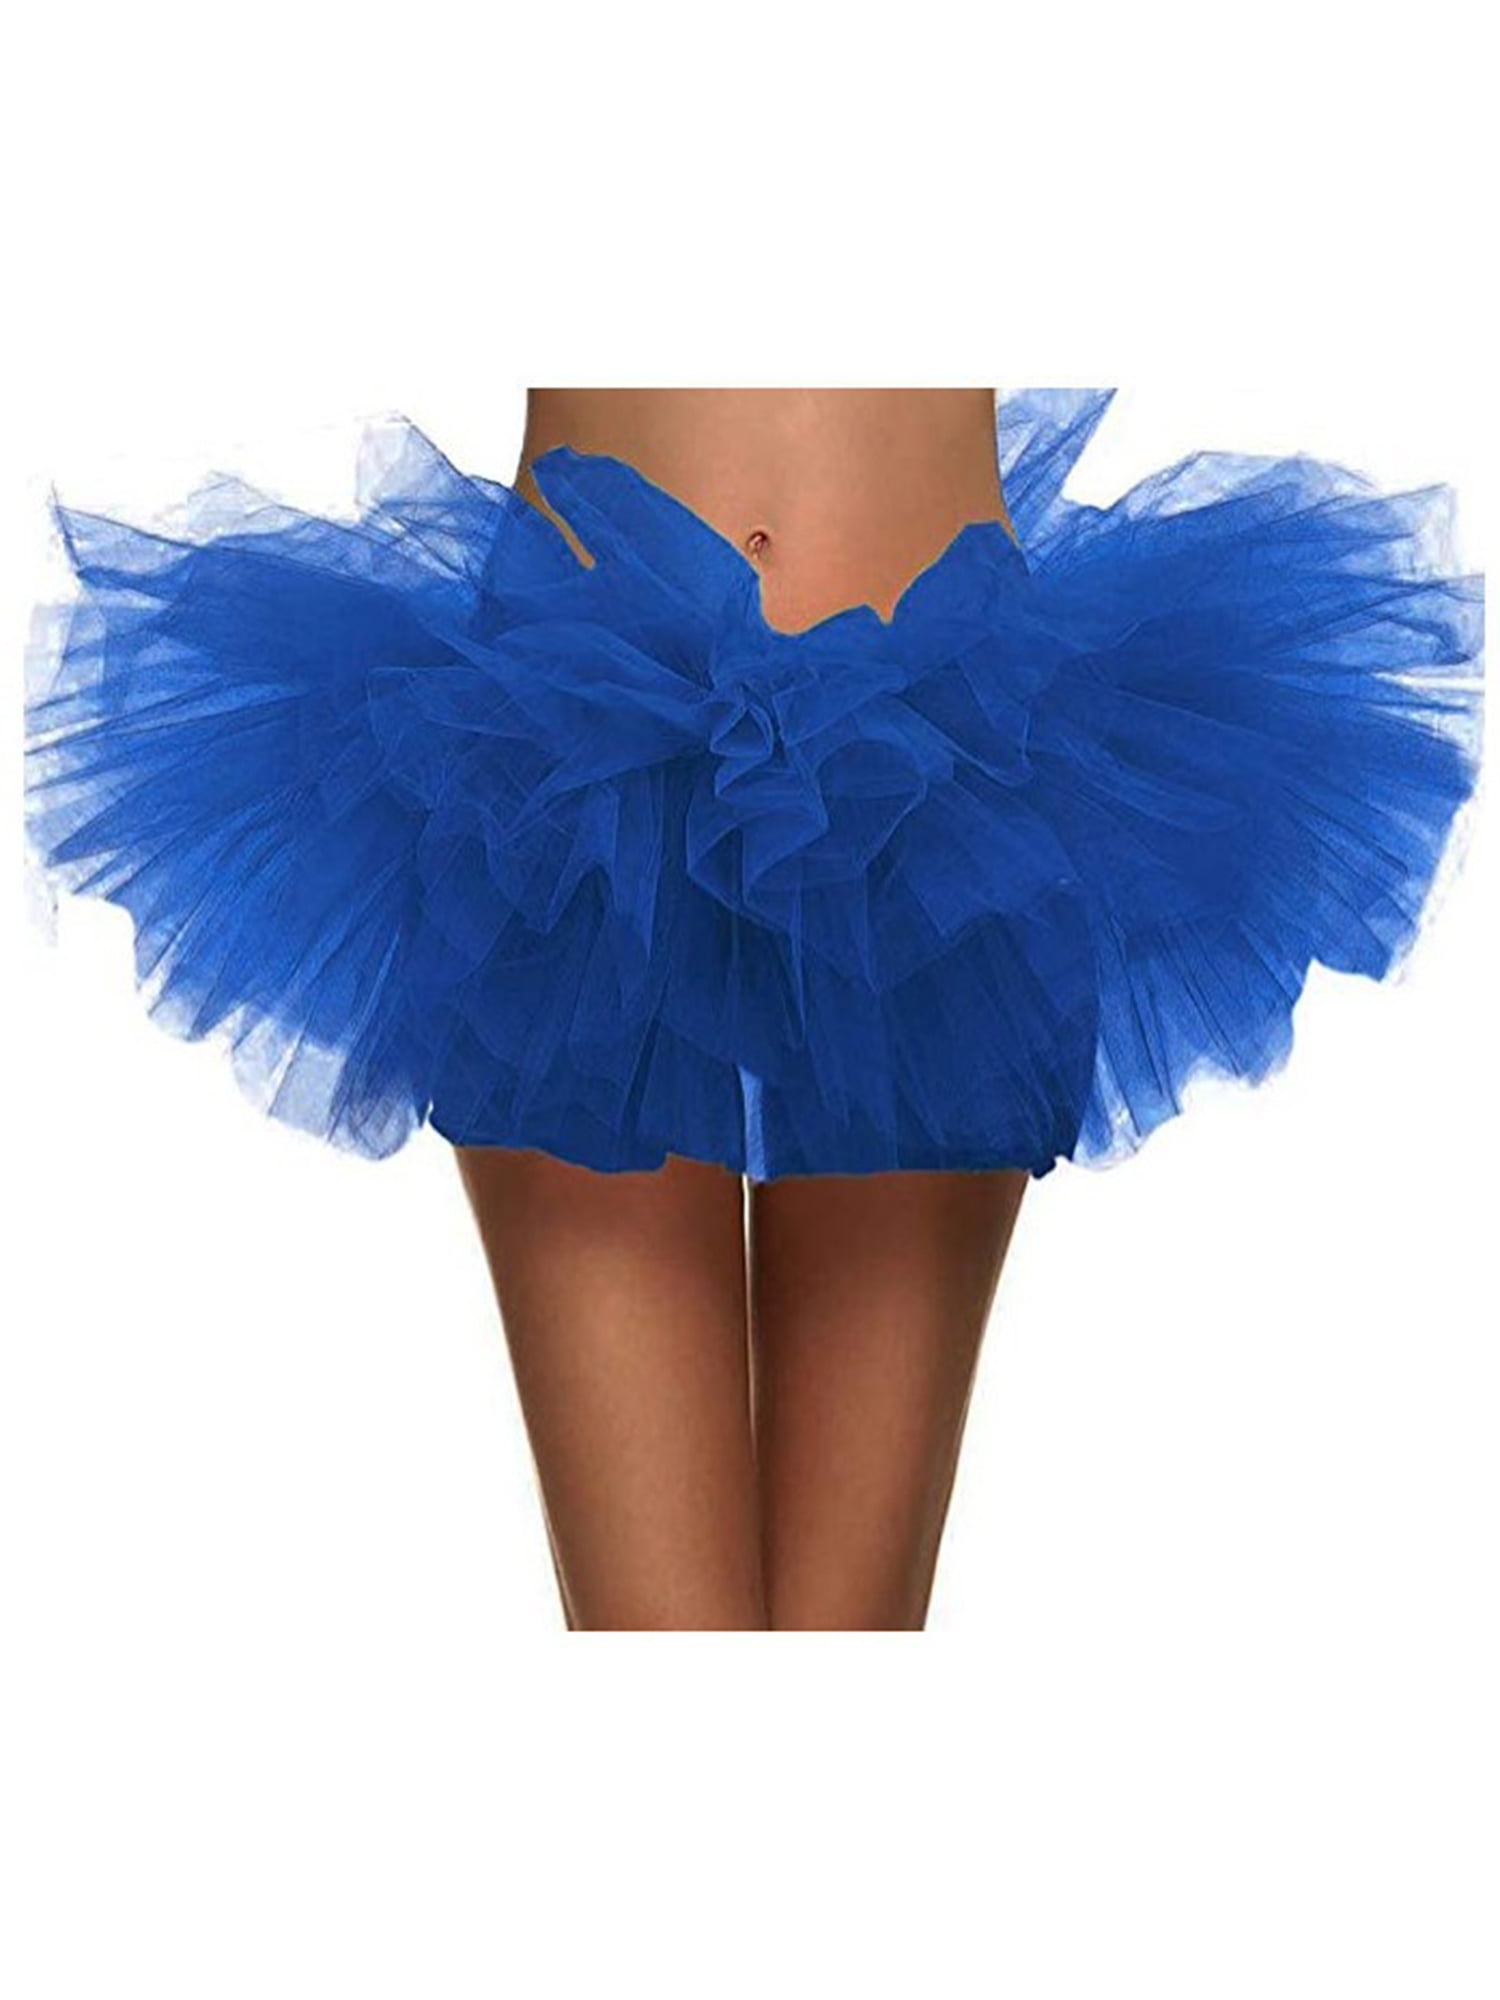 Women's Vintage Mini Tutu Skirt Tulle Costume Party Dance Running Party Skirt 